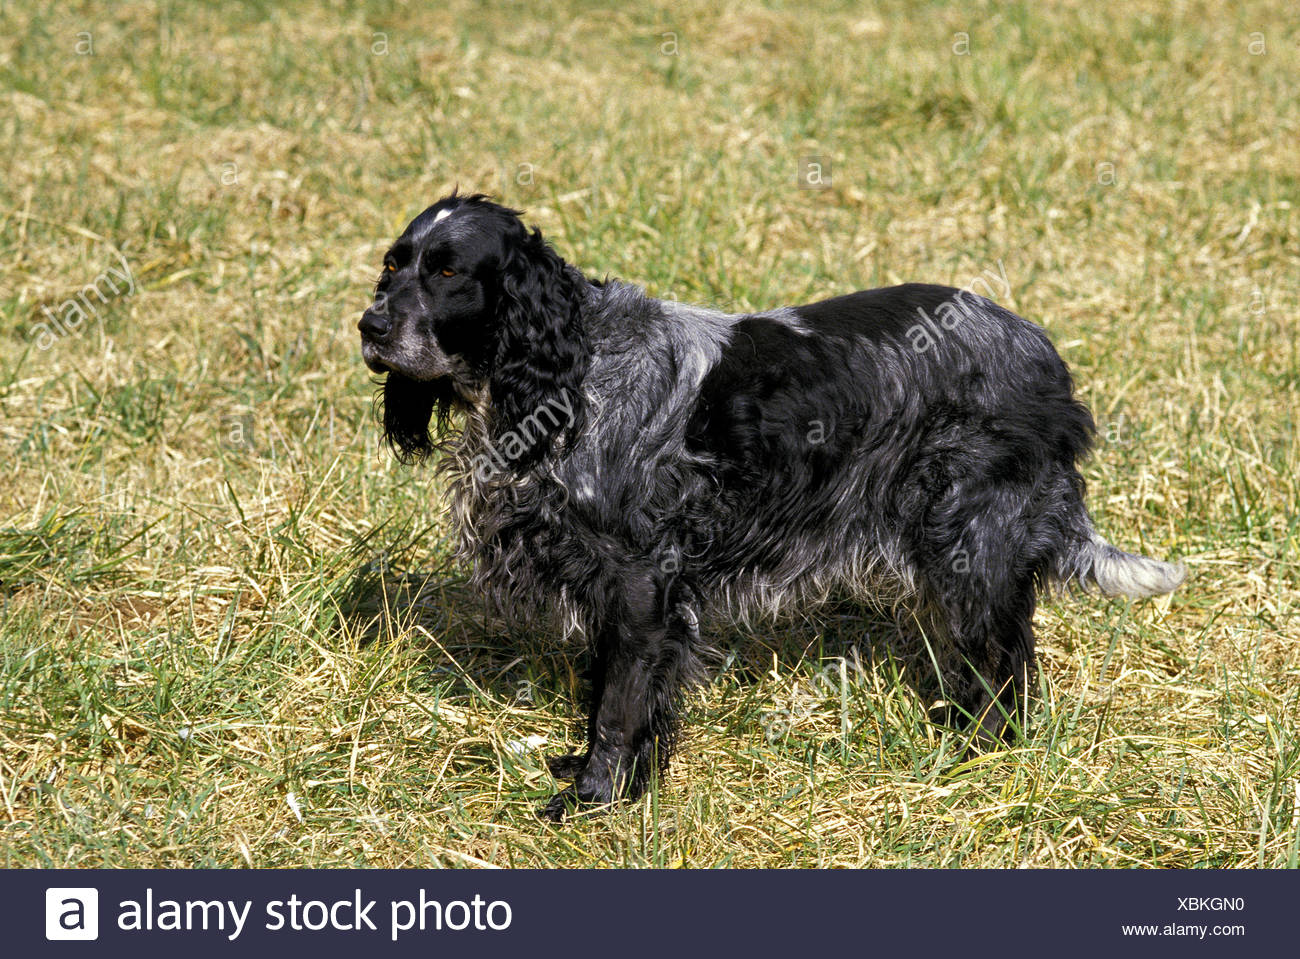 Blue Picardy Spaniel Dog On Grass Stock Photo Alamy